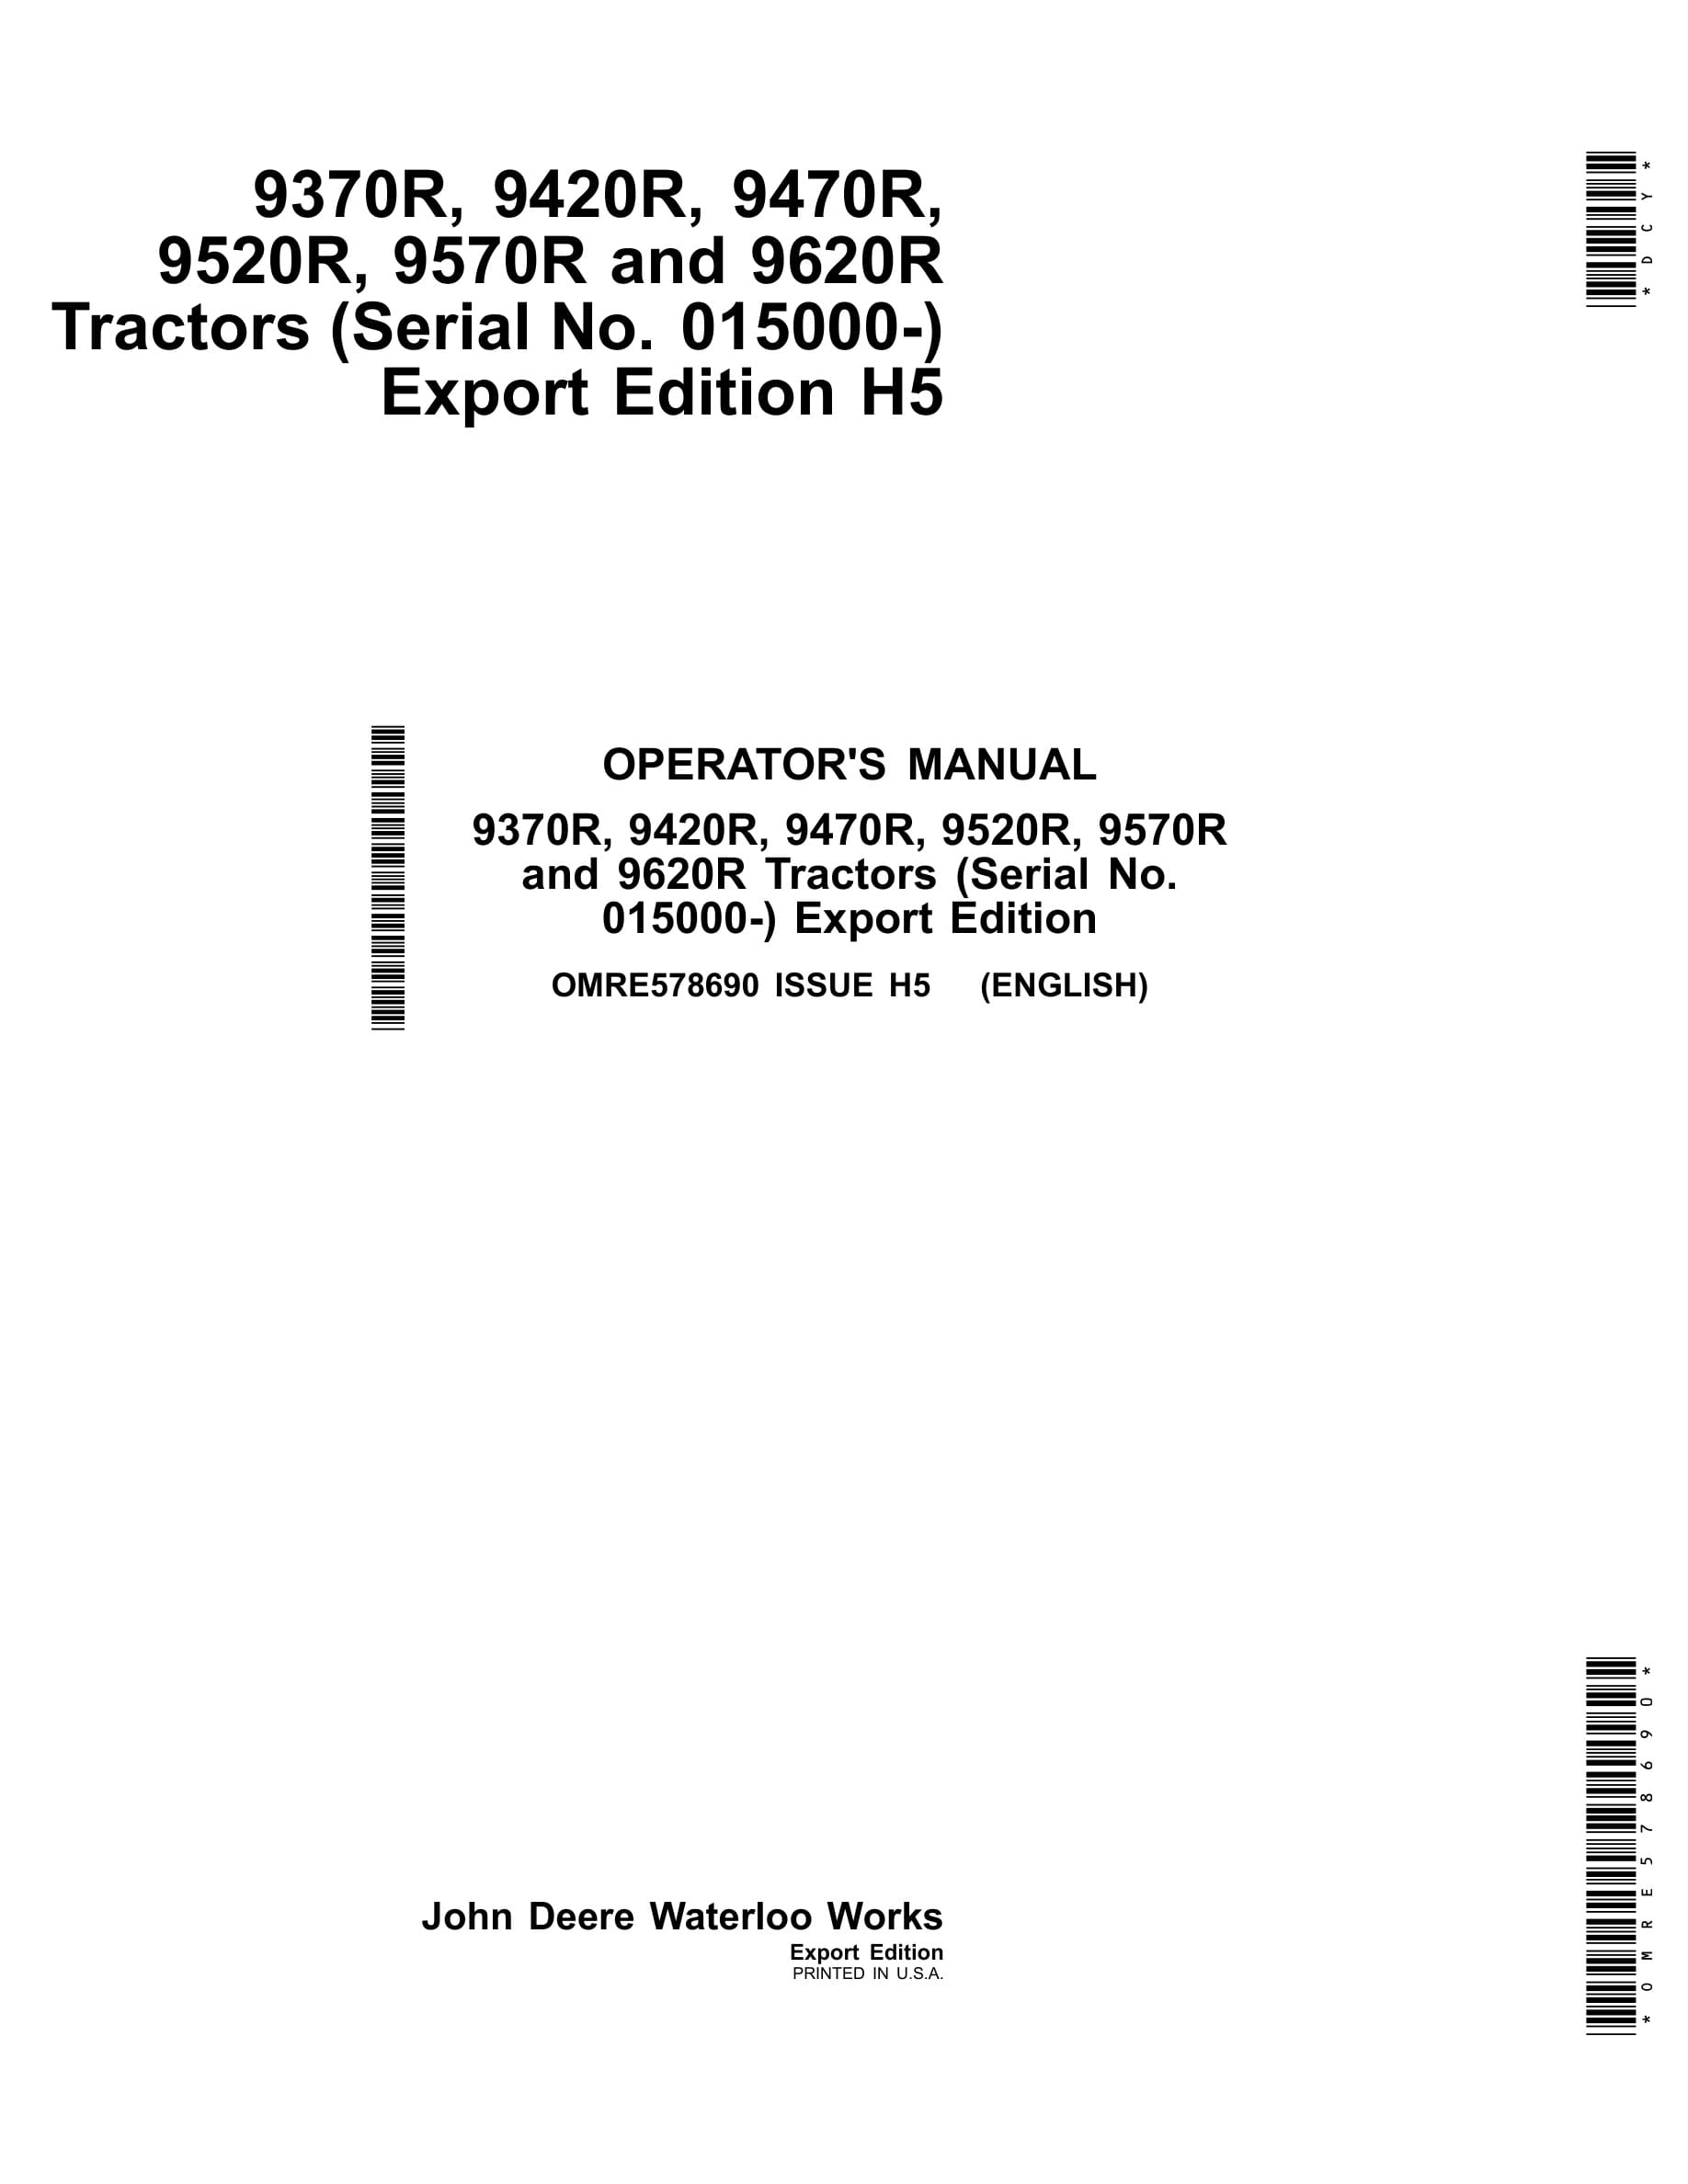 John Deere 9370r, 9420r, 9470r, 9520r, 9570r And 9620r Tractors Operator Manuals OMRE578690-1